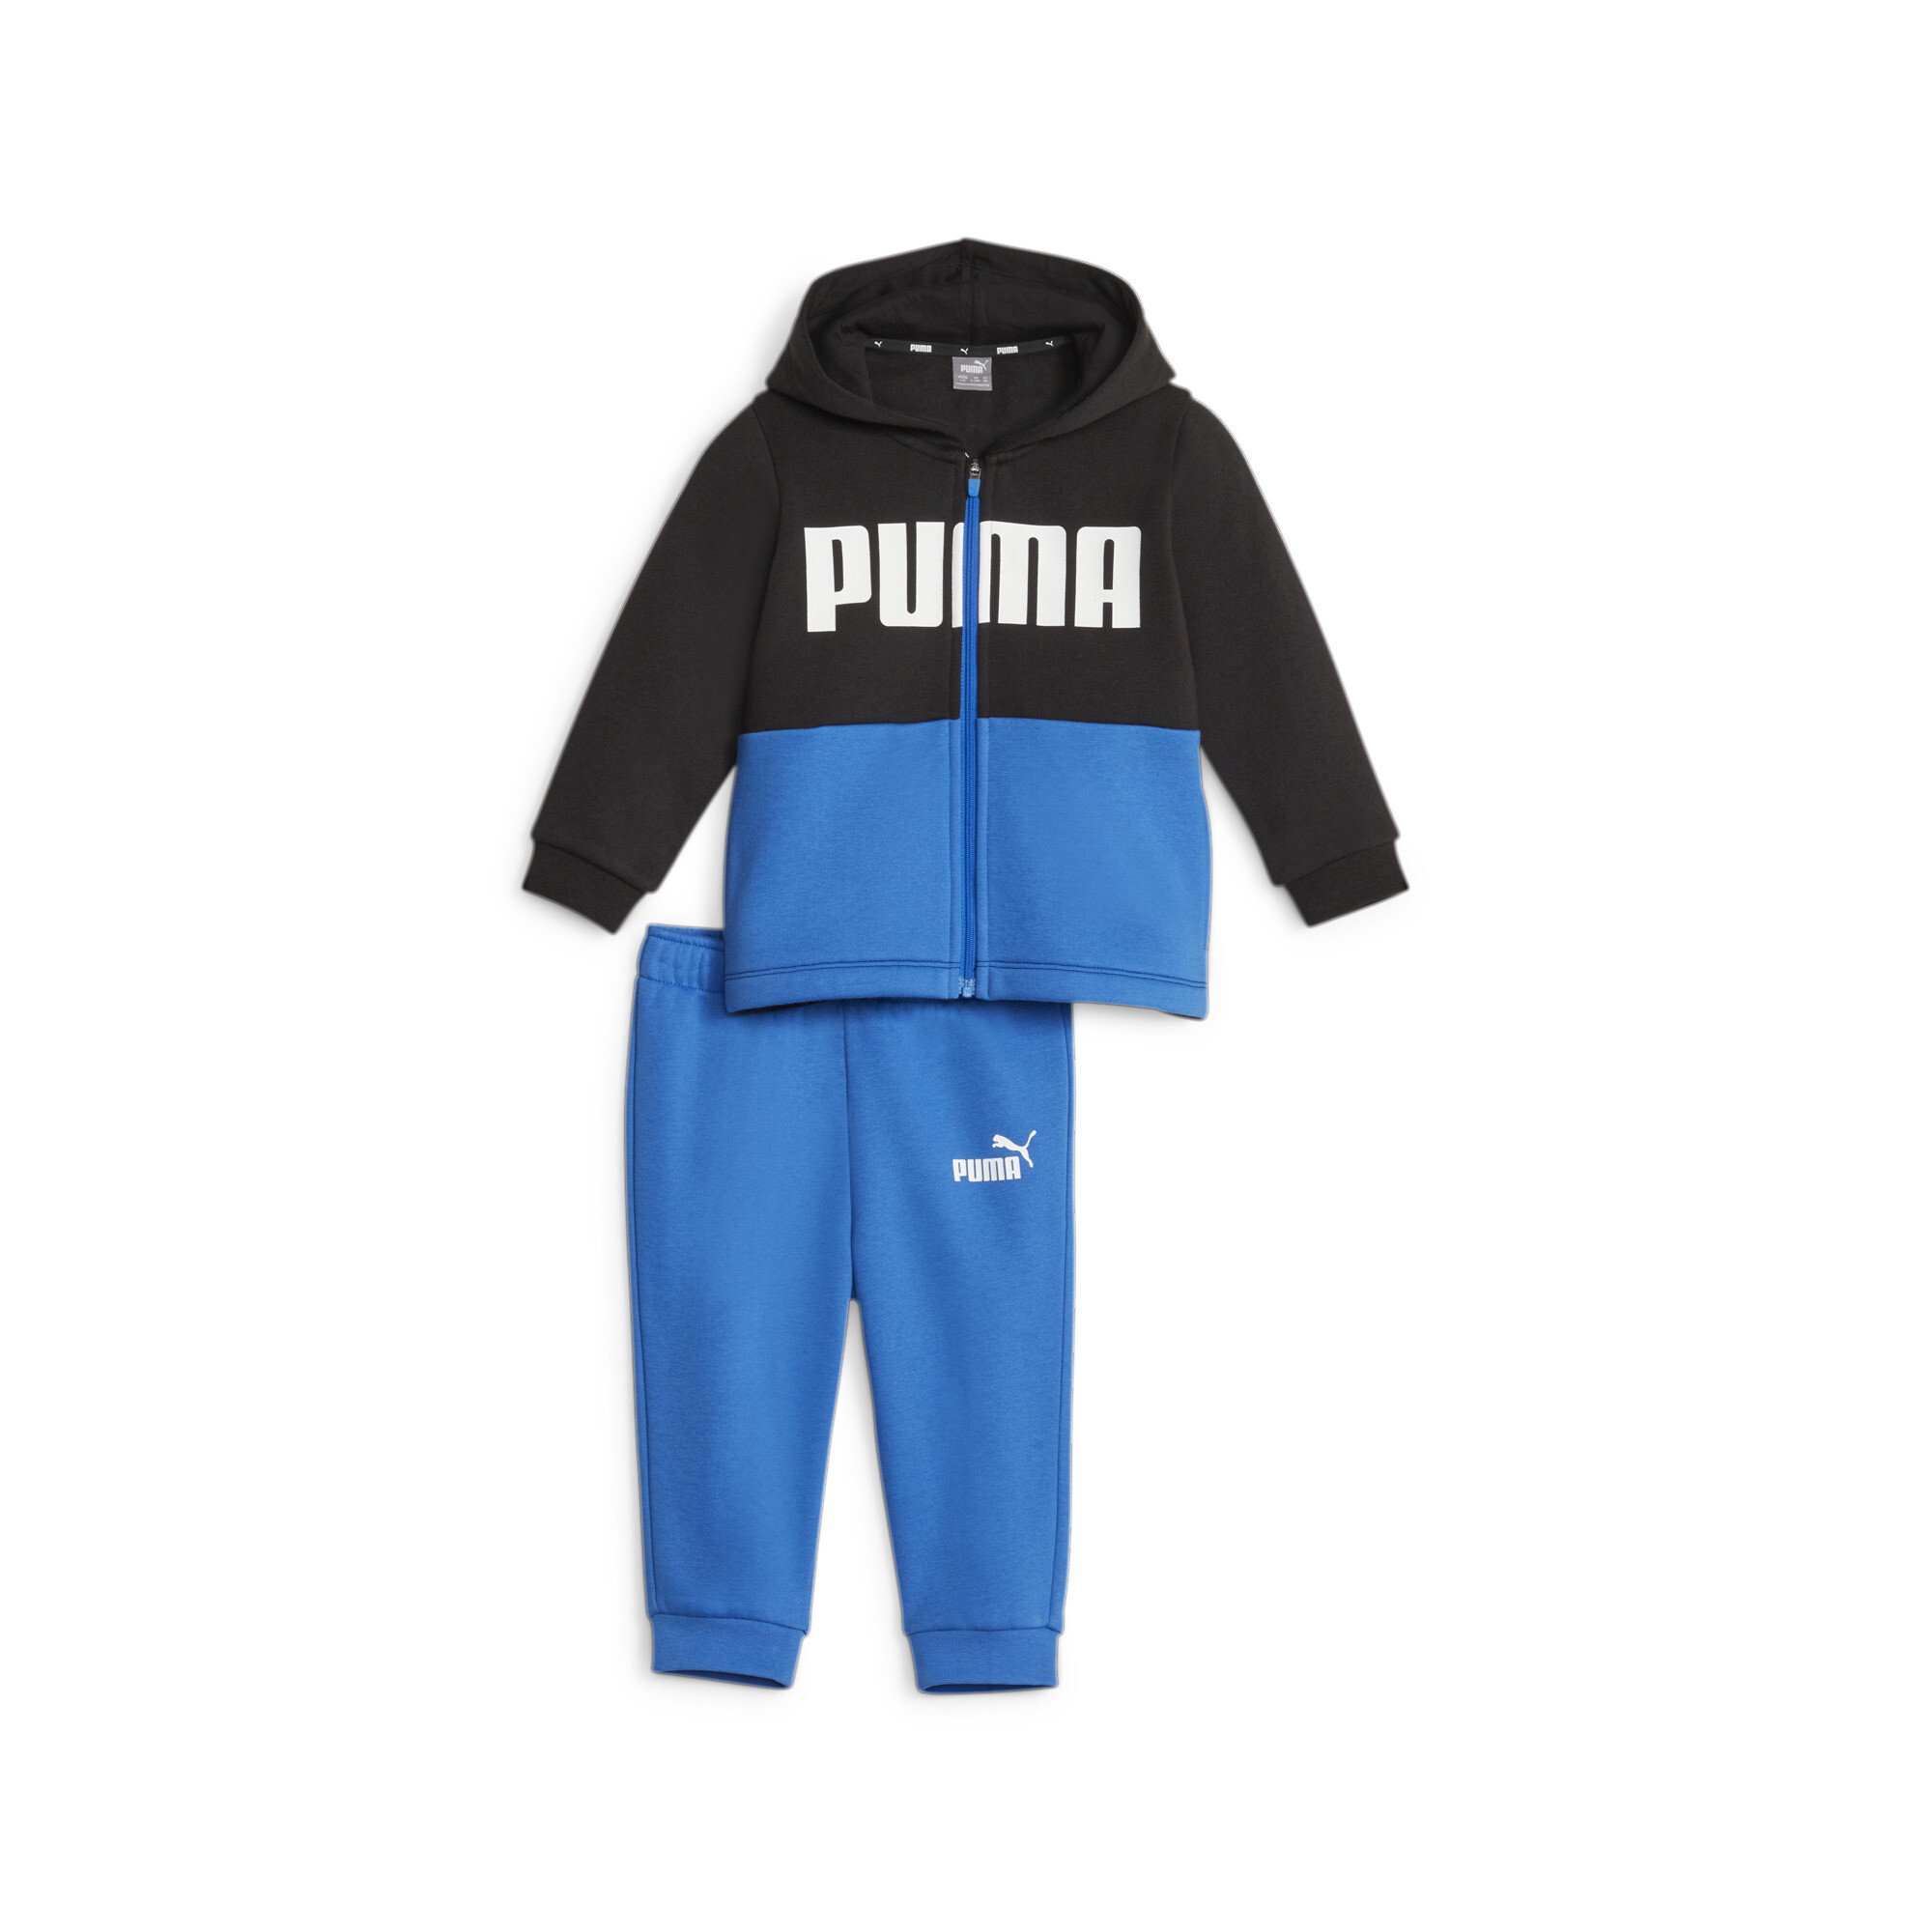 PUMA Minicats Colourblock Jogger Suit Babies In Blue, Size 12-18 Months